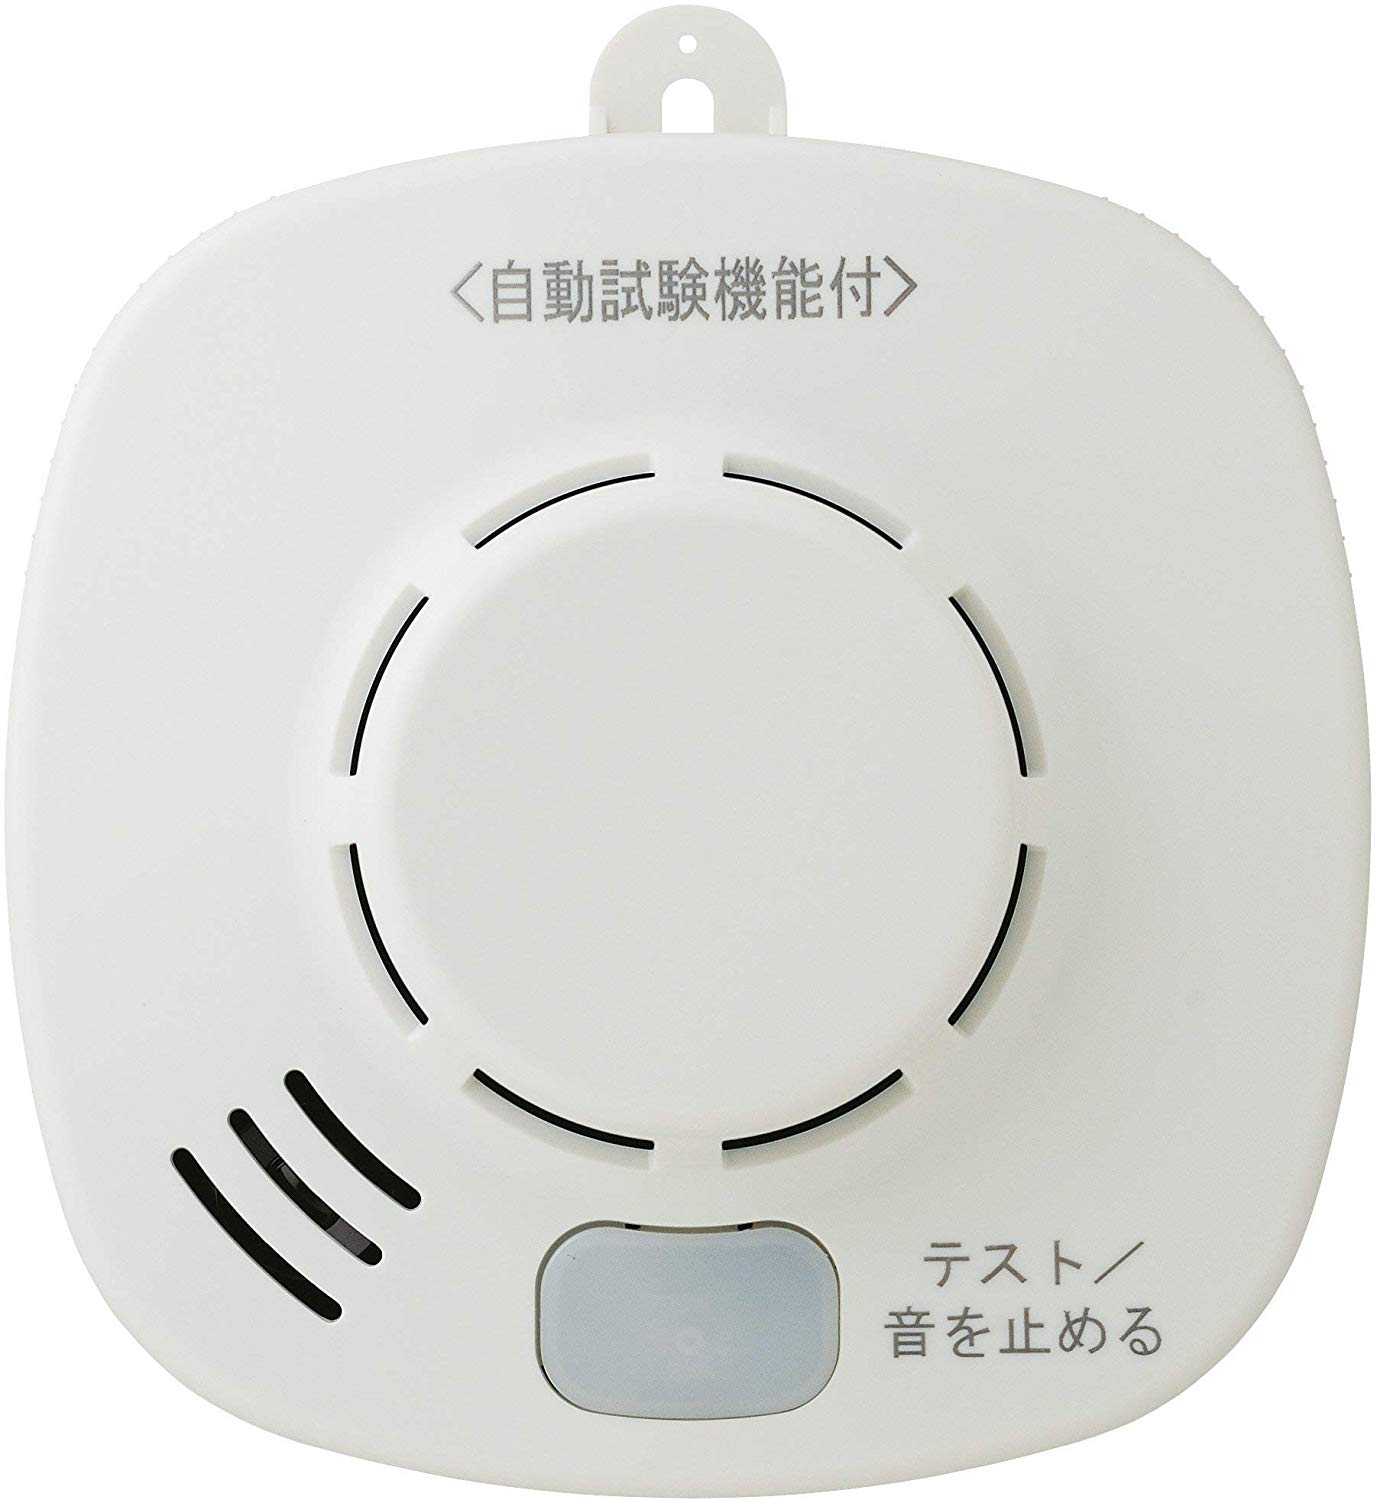 ホーチキ 火災警報器 ホワイトアイボリー 煙式 1個入 無線連動方式(煙